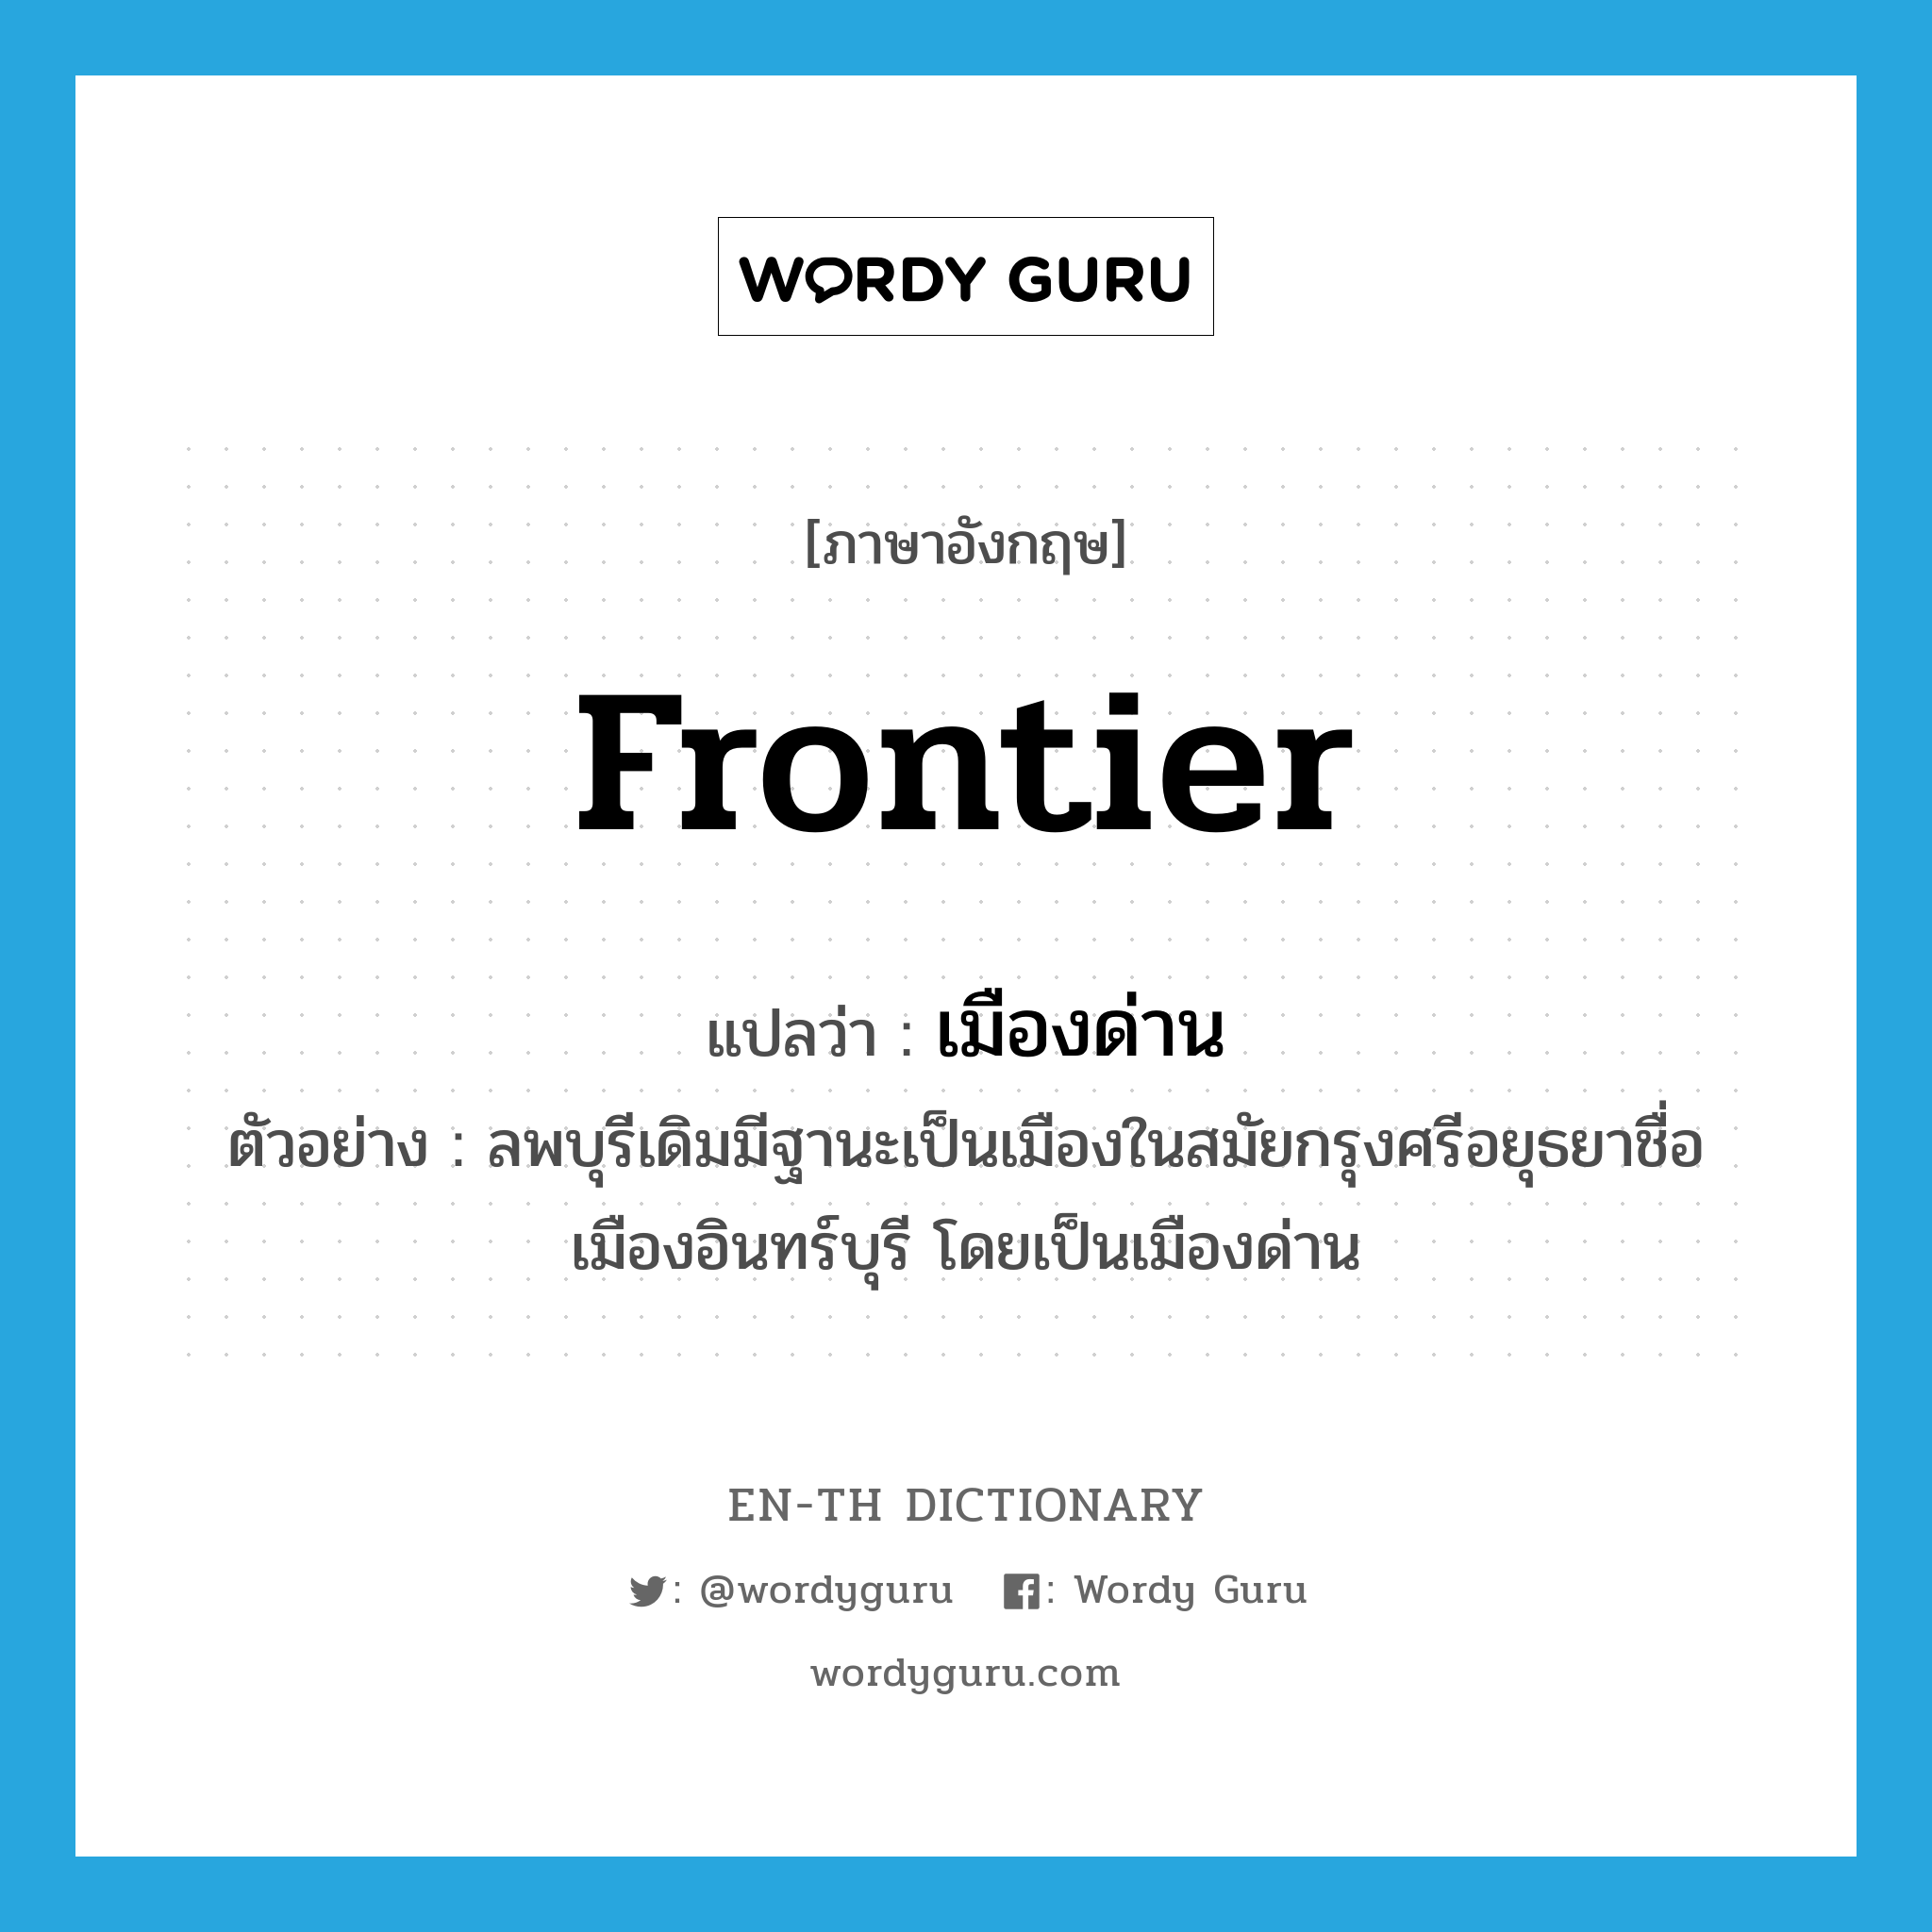 frontier แปลว่า?, คำศัพท์ภาษาอังกฤษ frontier แปลว่า เมืองด่าน ประเภท N ตัวอย่าง ลพบุรีเดิมมีฐานะเป็นเมืองในสมัยกรุงศรีอยุธยาชื่อเมืองอินทร์บุรี โดยเป็นเมืองด่าน หมวด N